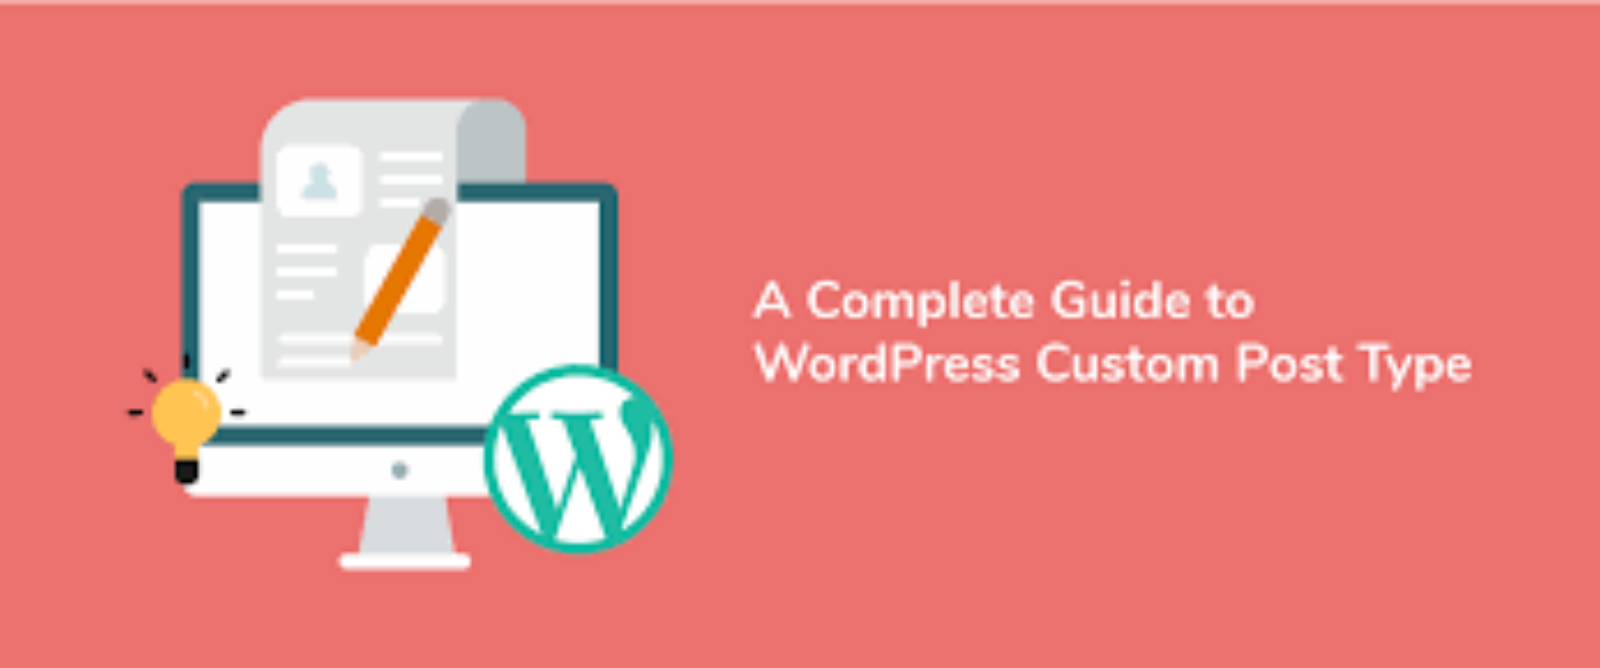 Understanding Custom Post Types in WordPress | Complete Guide